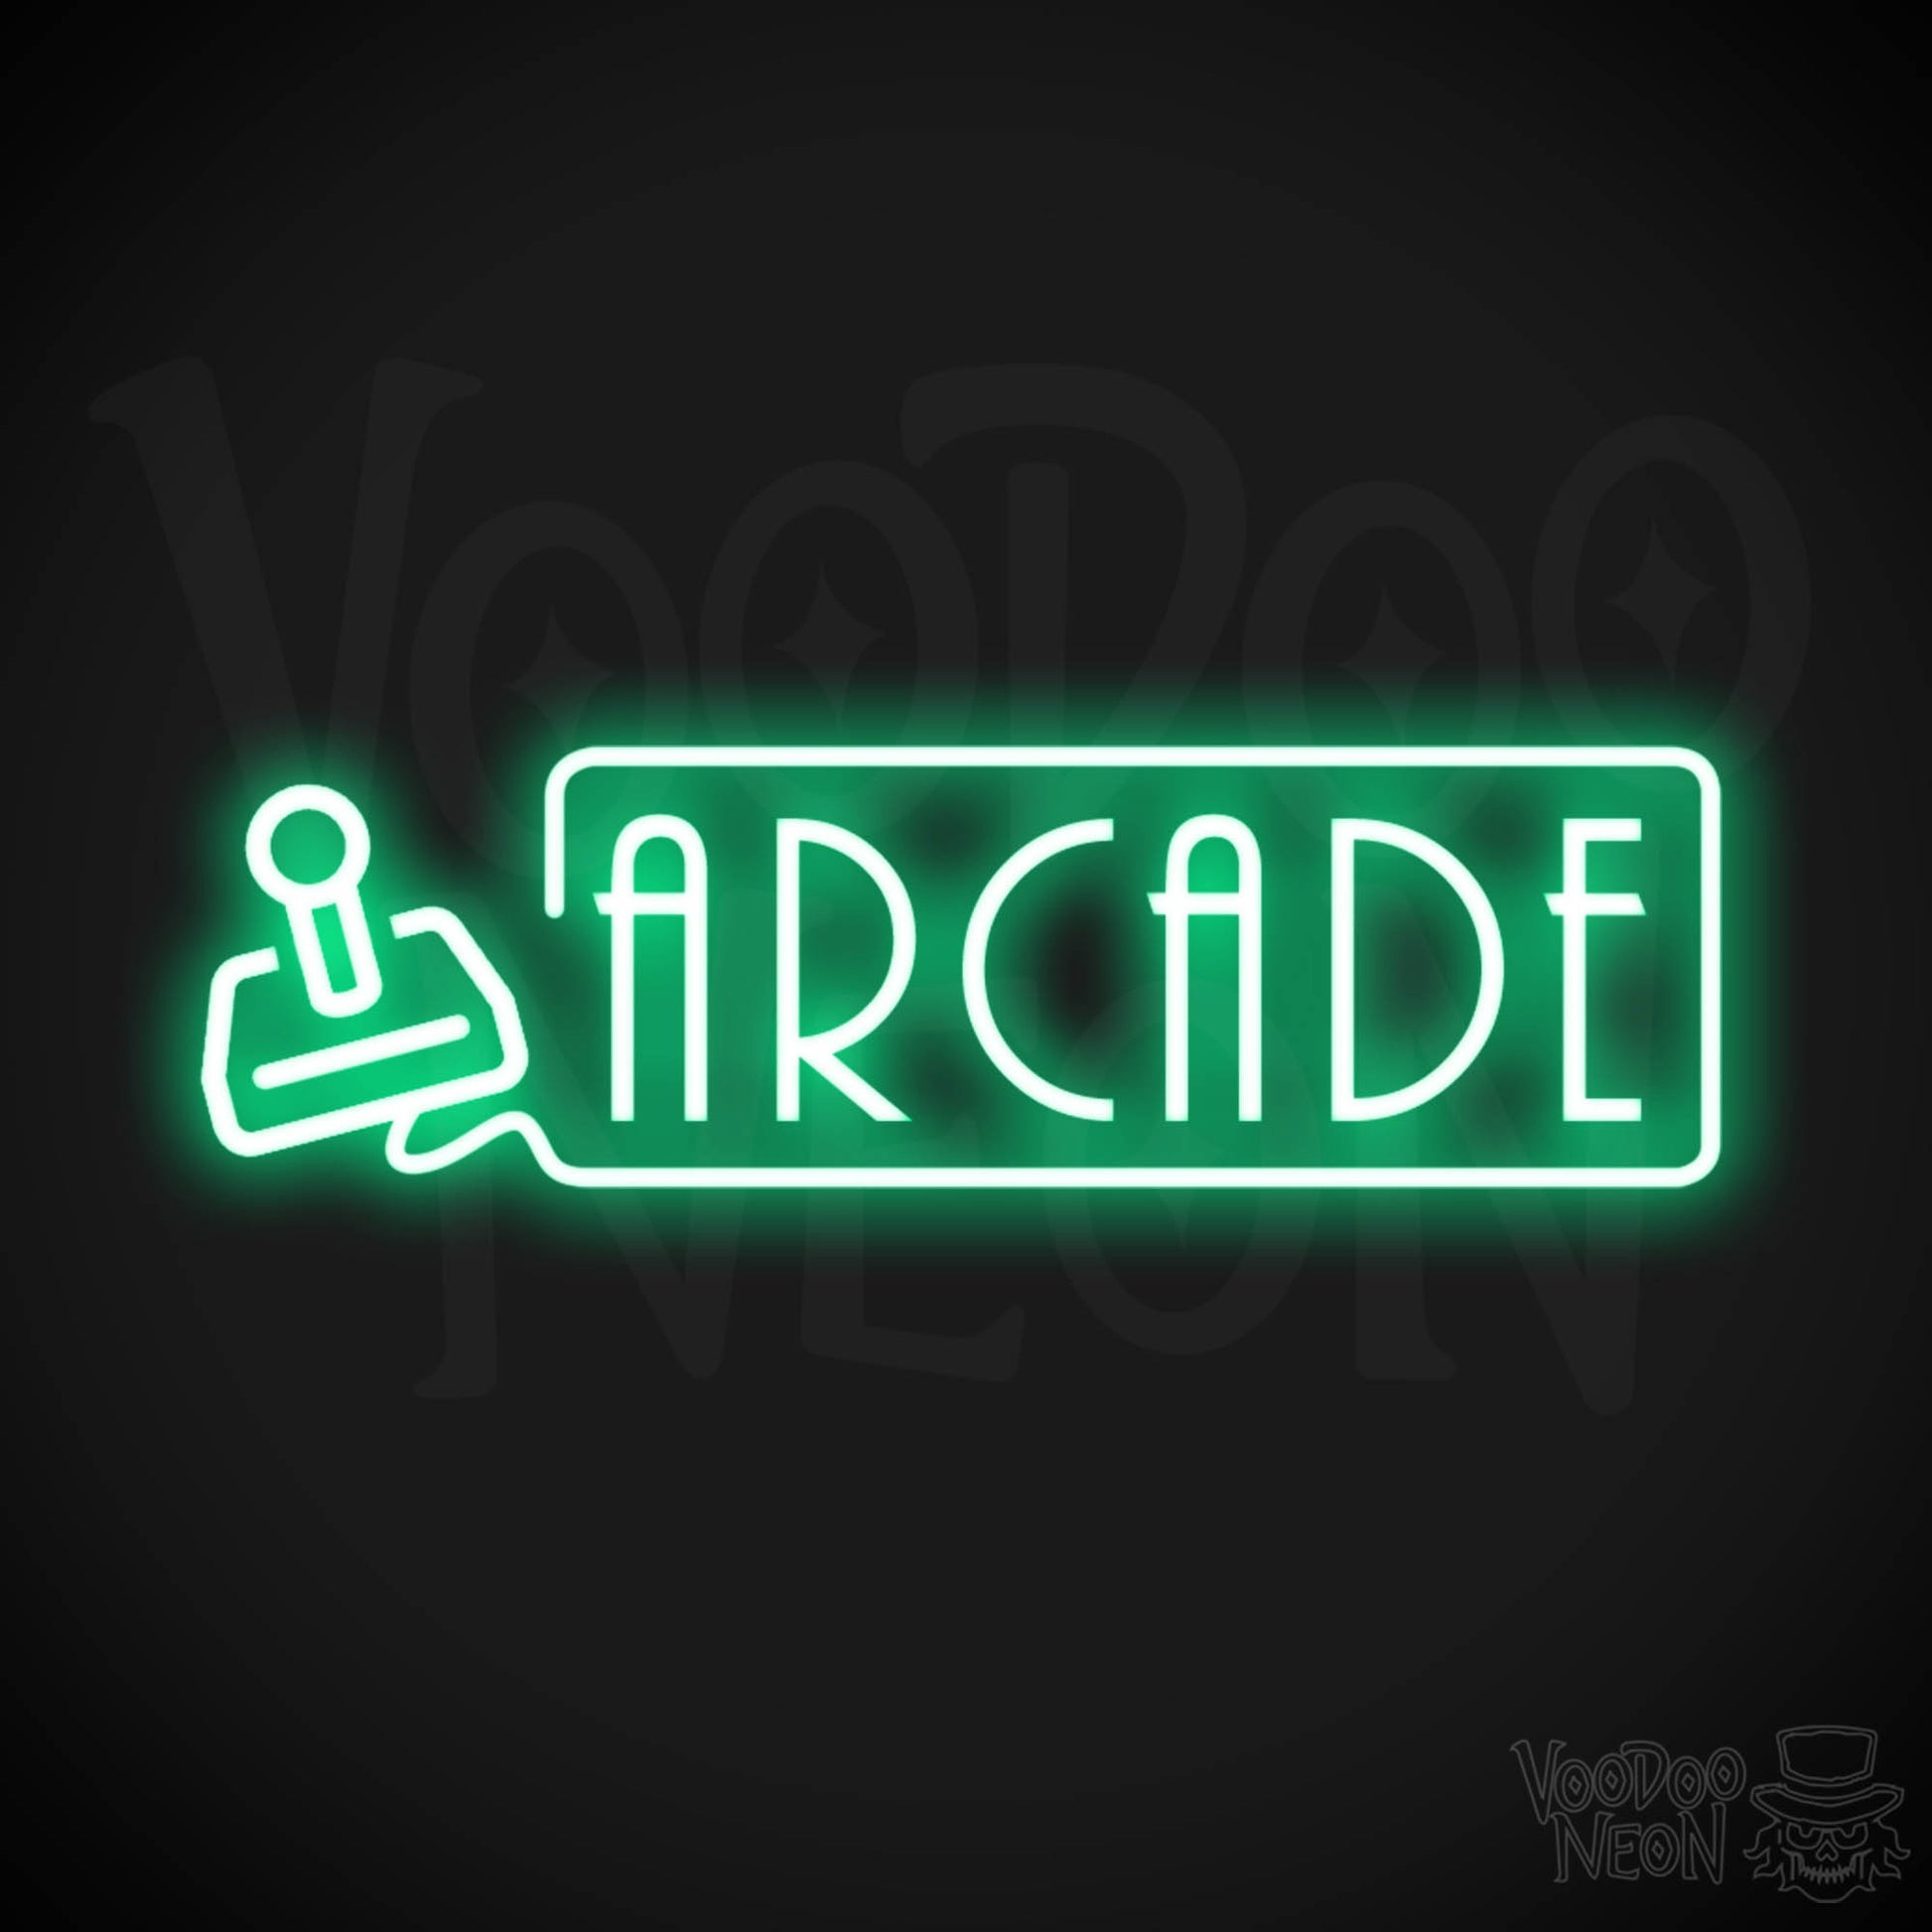 Arcade Neon Sign - Neon Arcade Sign - Neon Wall Art - Color Green